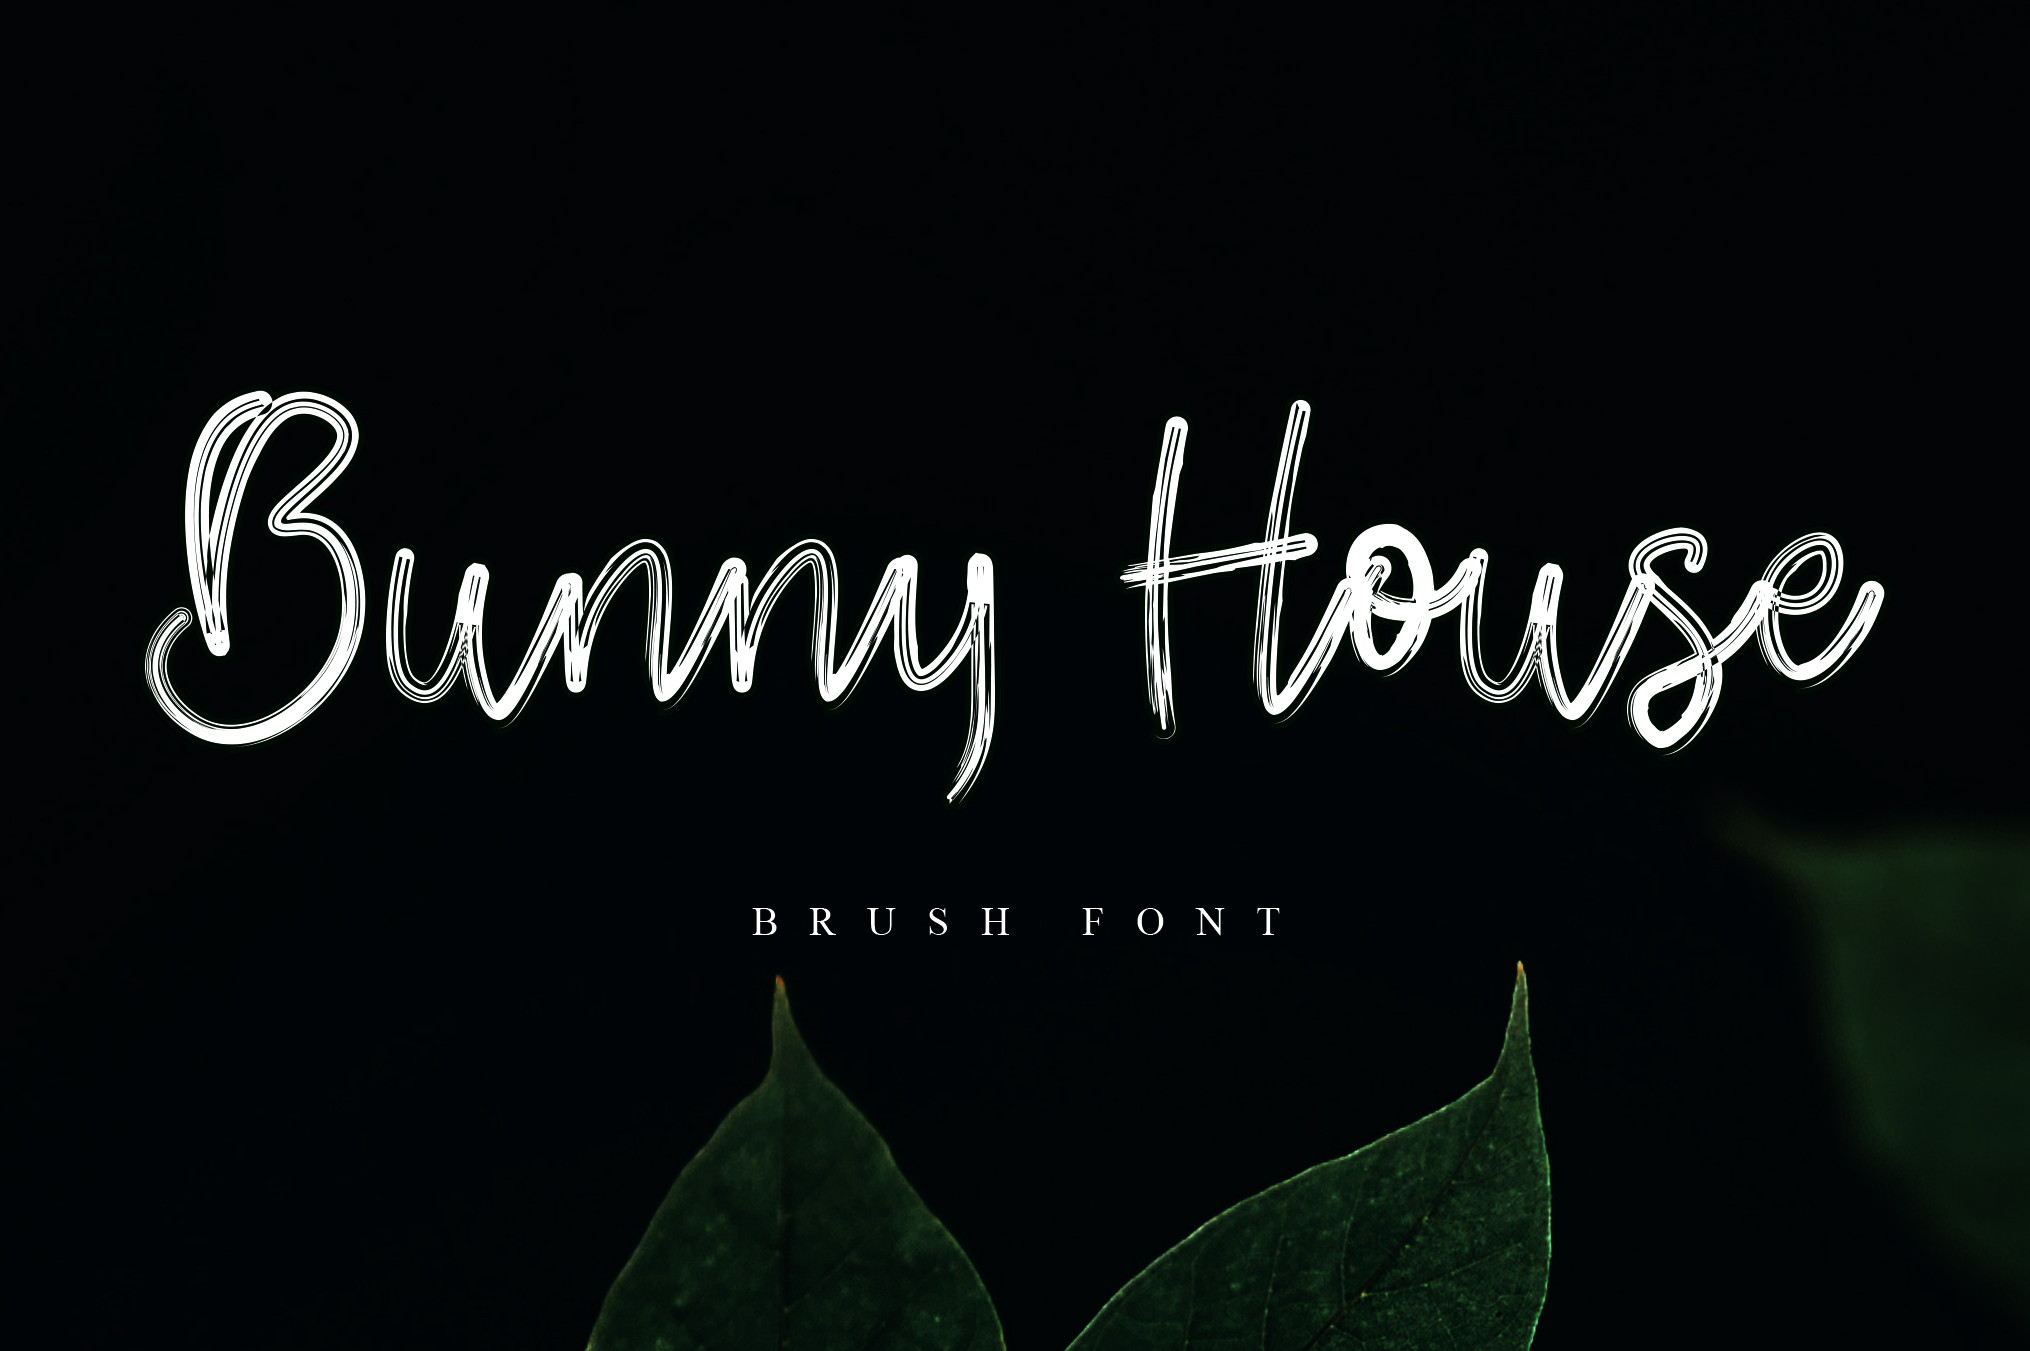 Bunny House